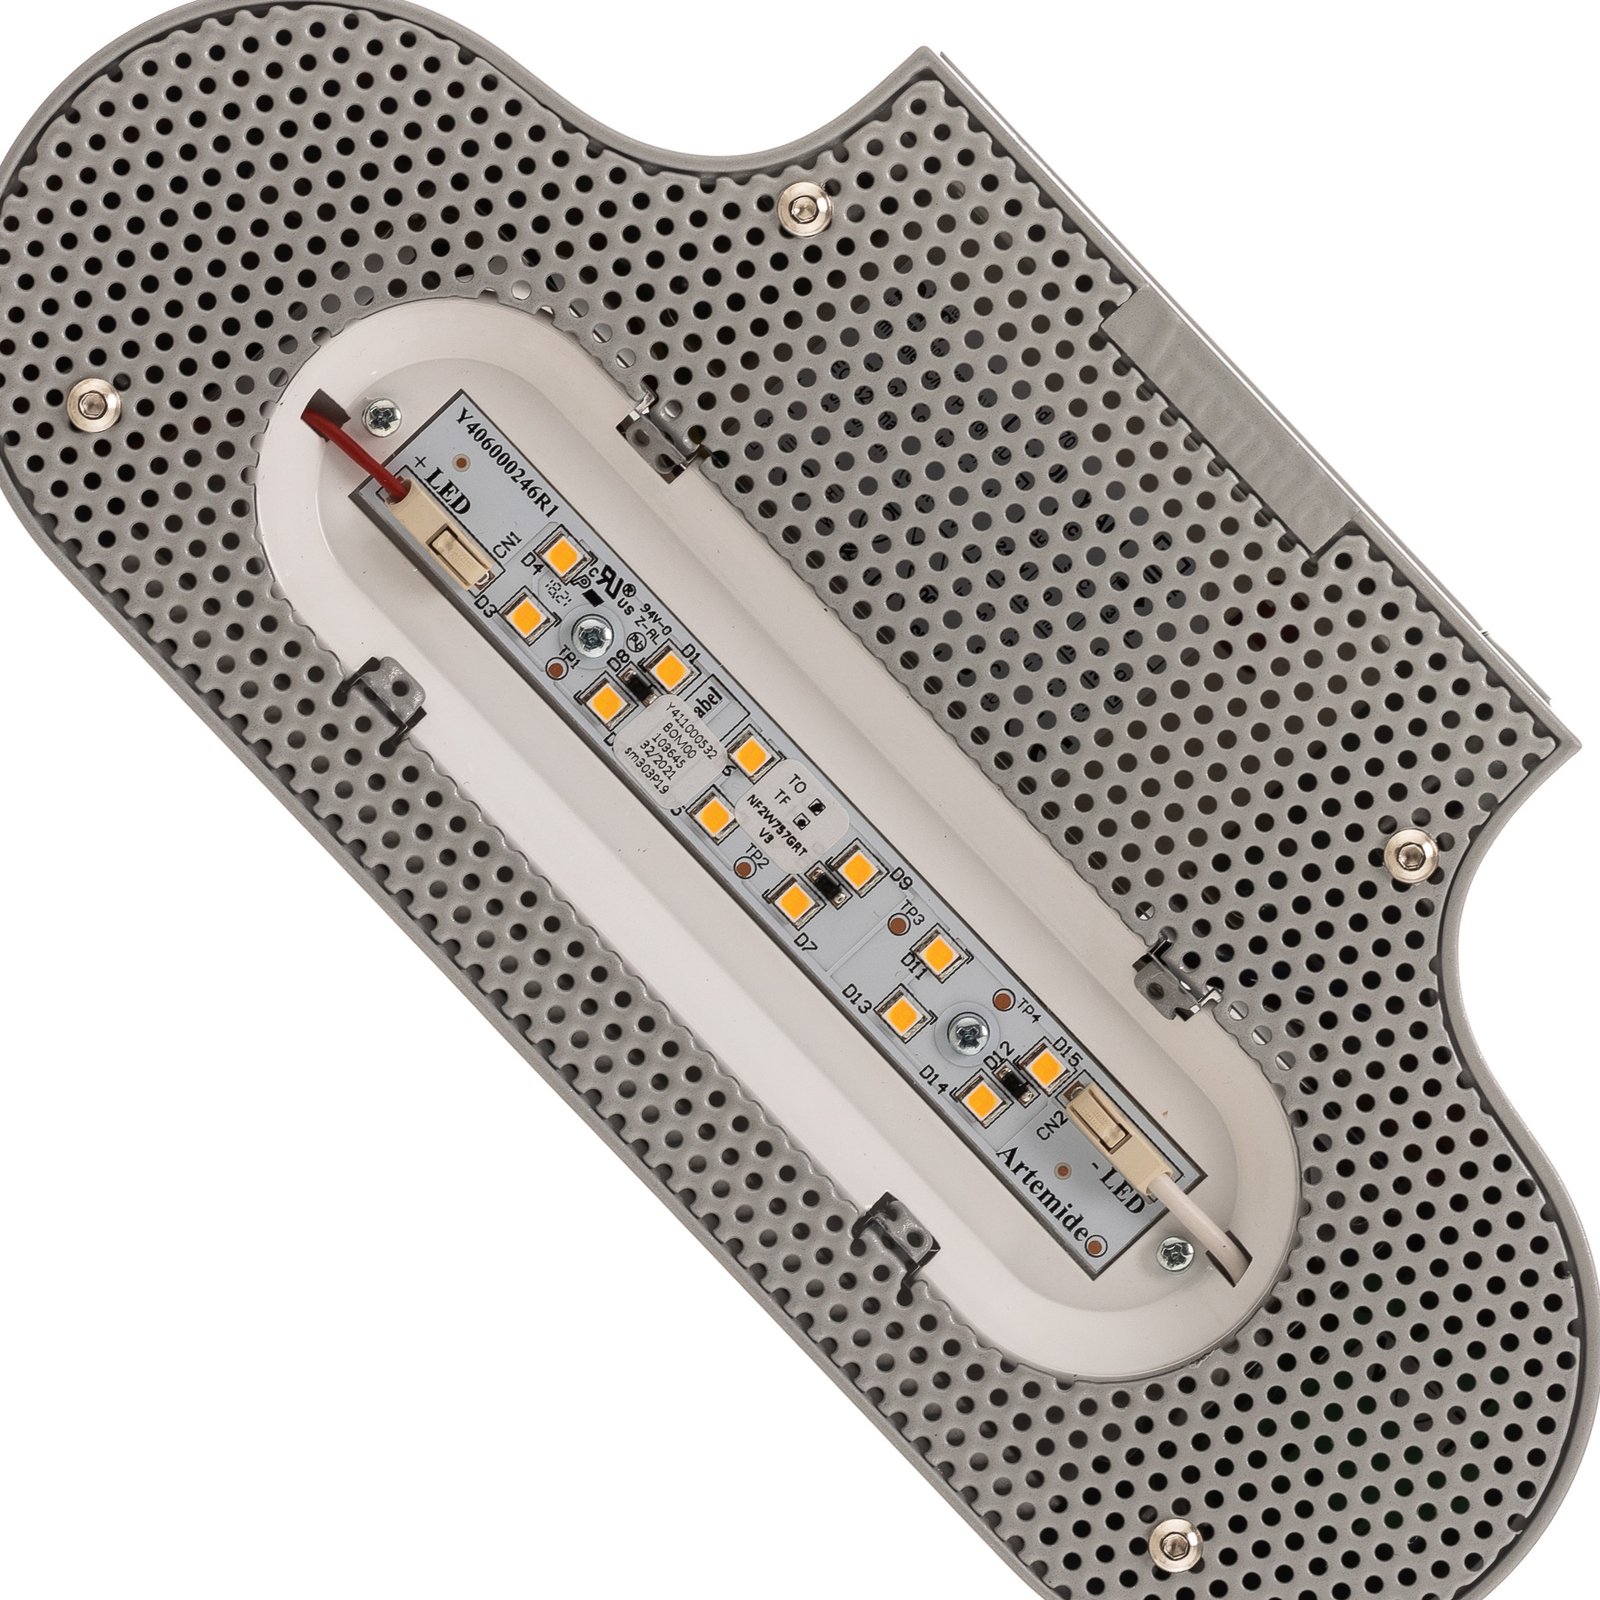 Artemide Talo LED-vegglampe 21 cm sølv 3 000 K